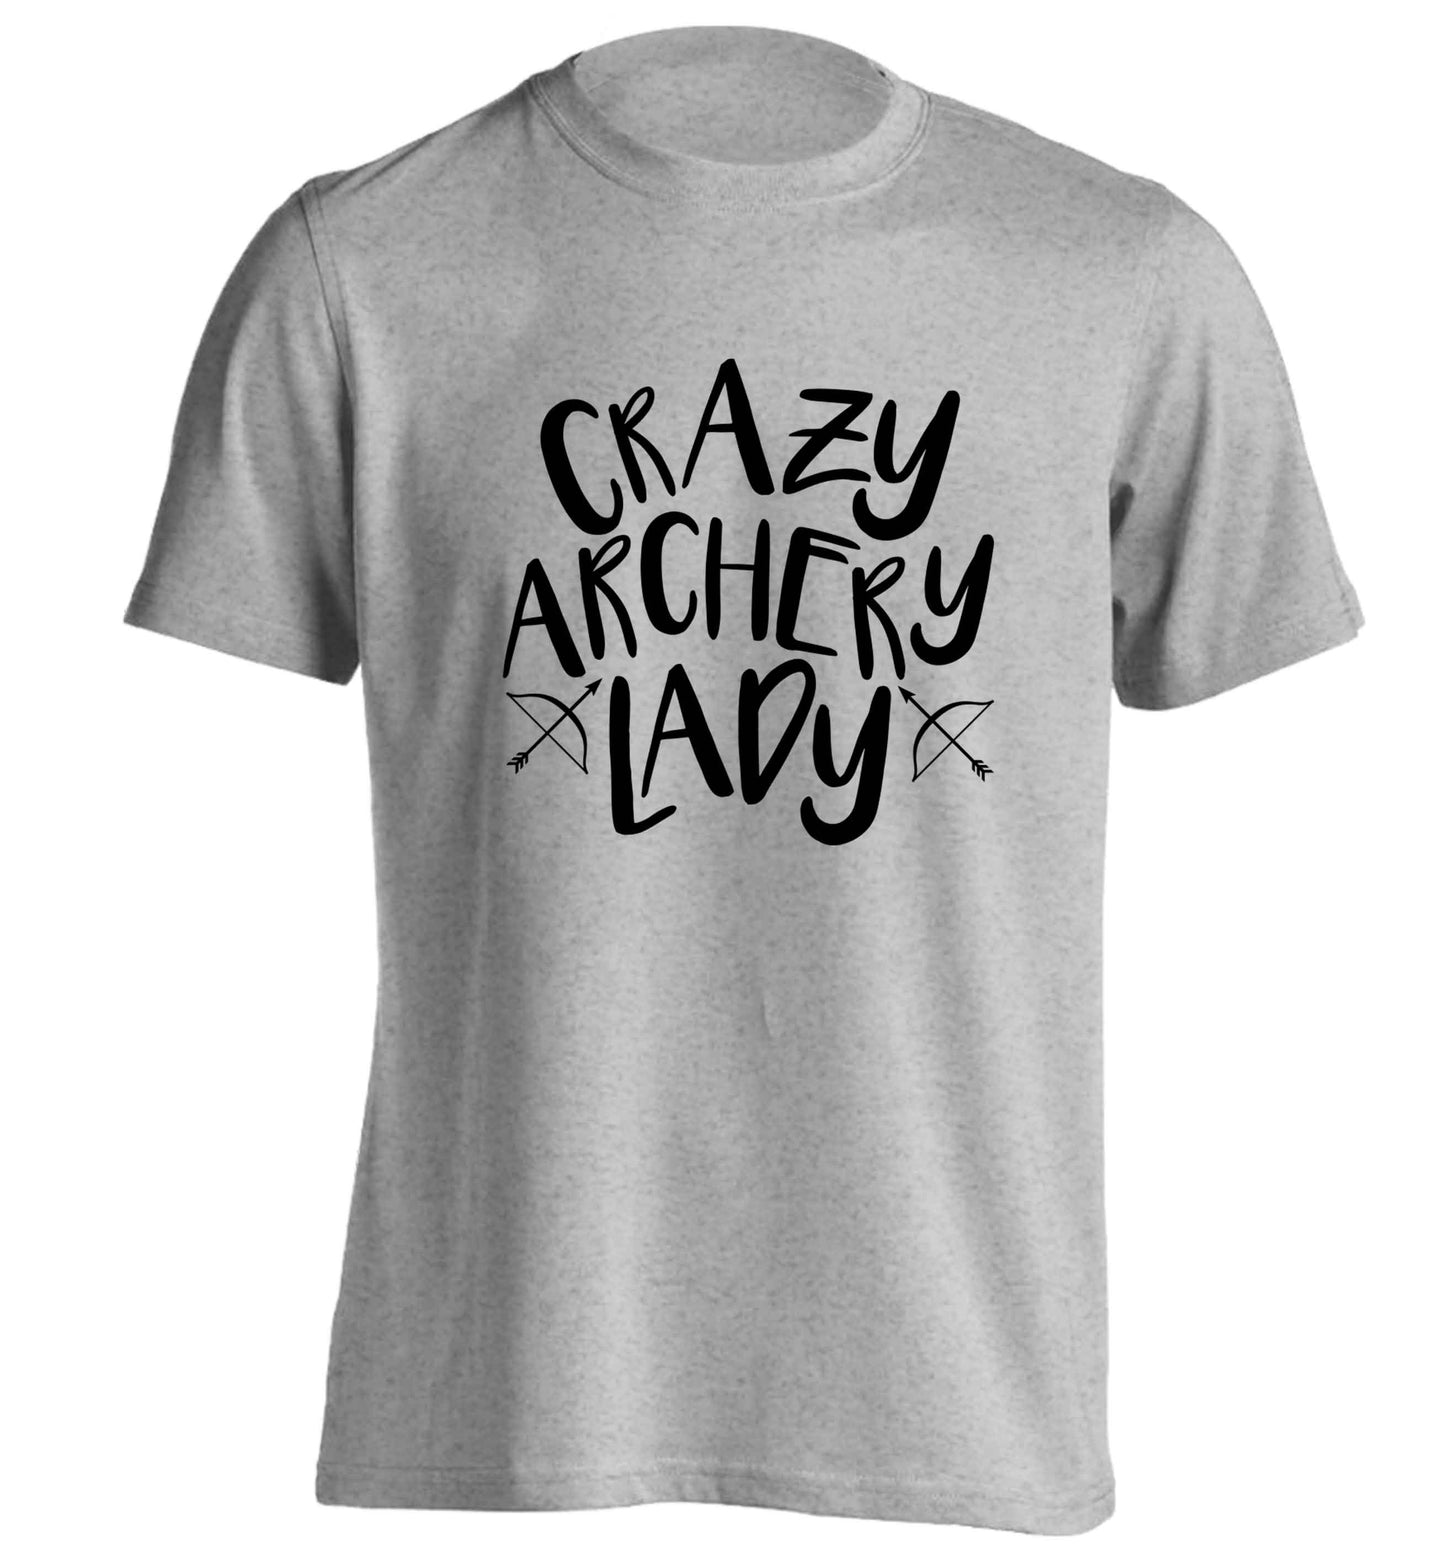 Crazy archery lady adults unisex grey Tshirt 2XL